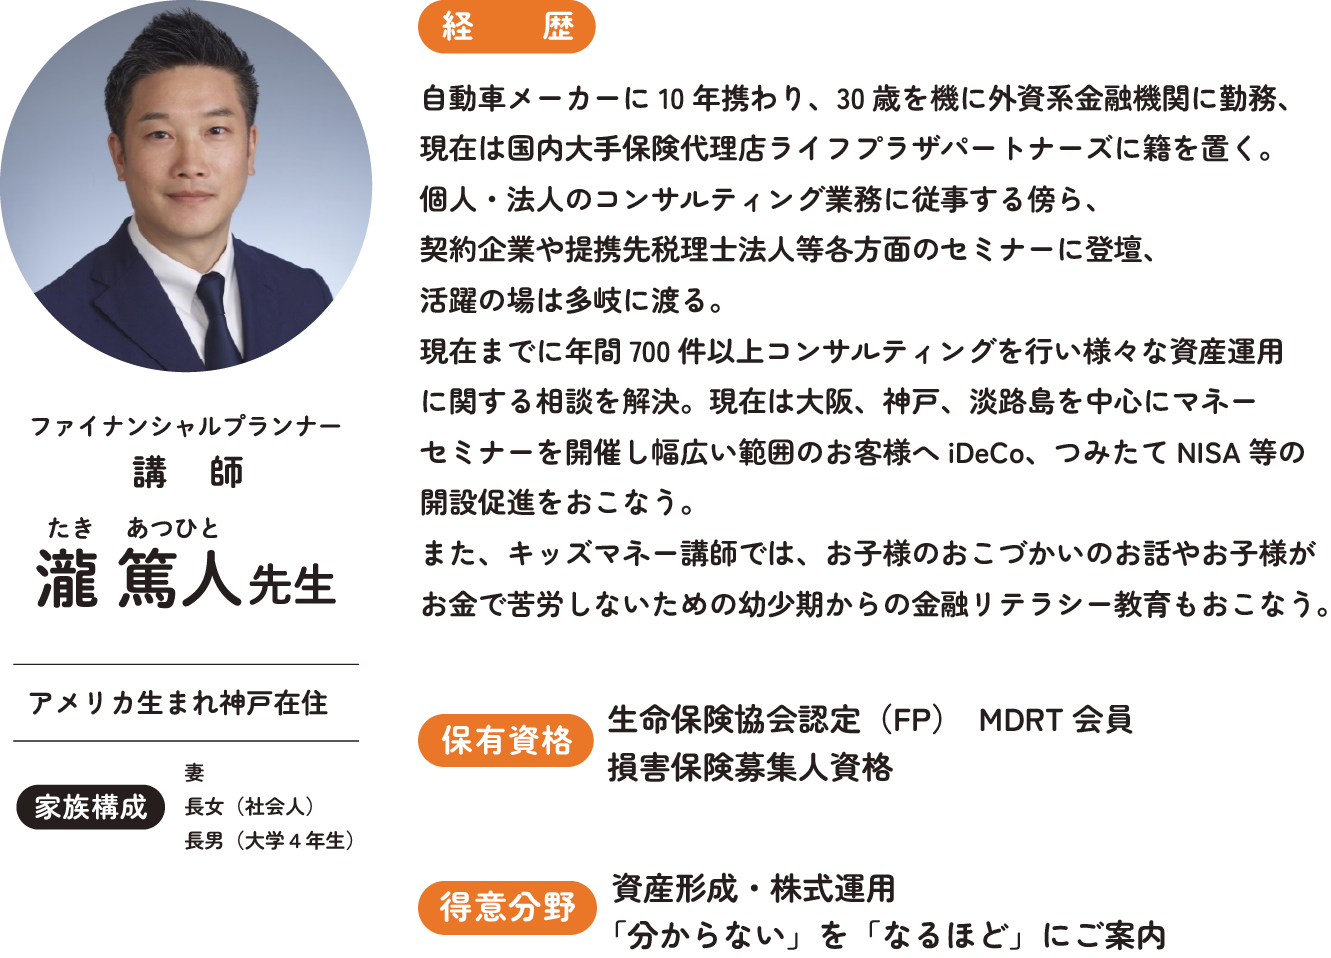 フィナンシャルプランナー 講師 瀧 篤人先生